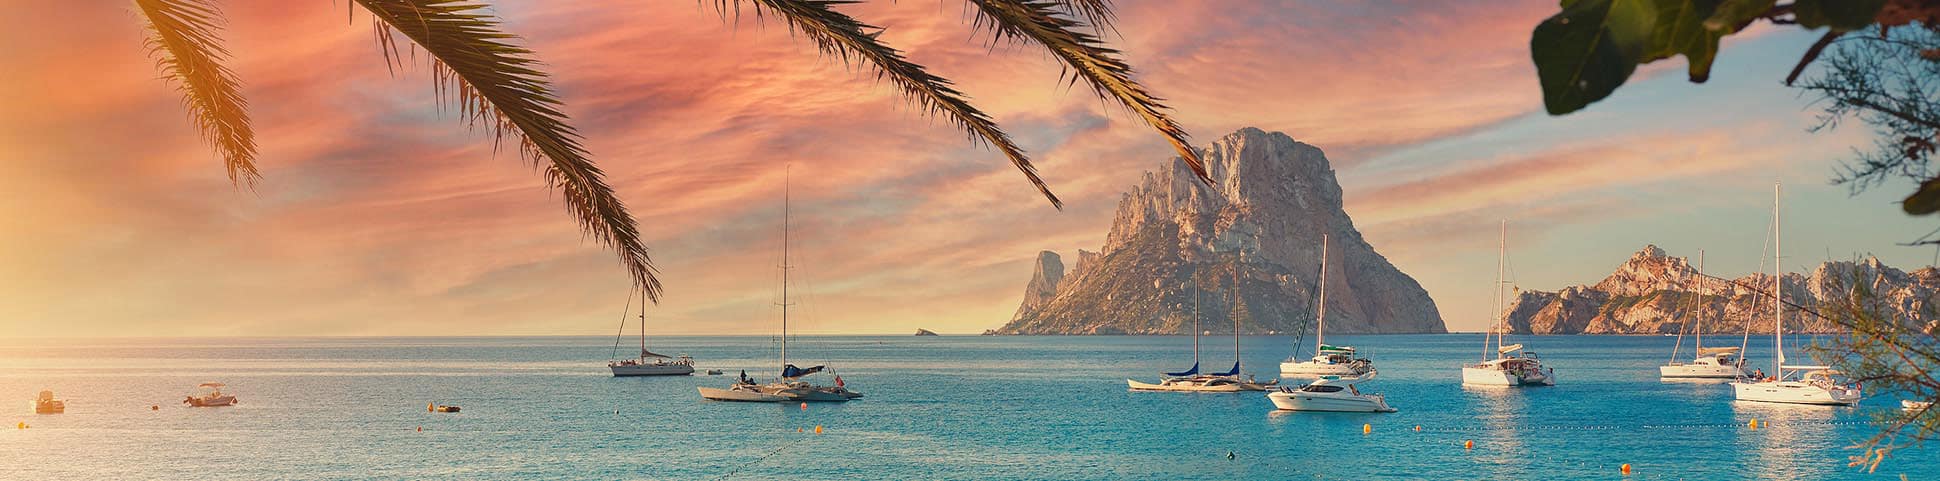 Blick auf das Meer und Schiffe in Ibiza